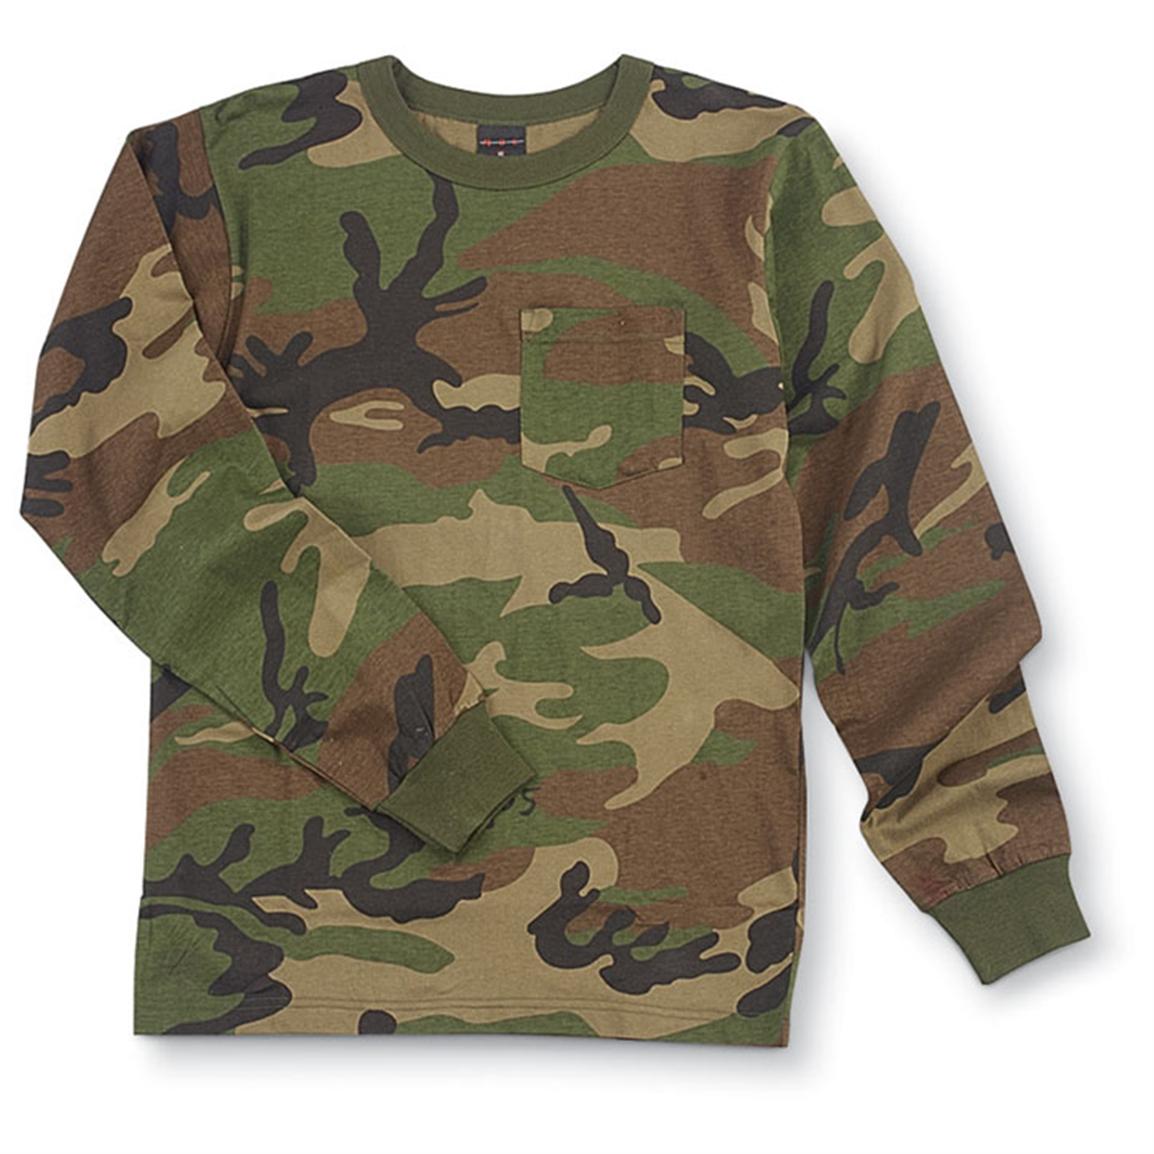 2-long-sleeve-pocket-t-shirts-woodland-camo-75589-shirts-at